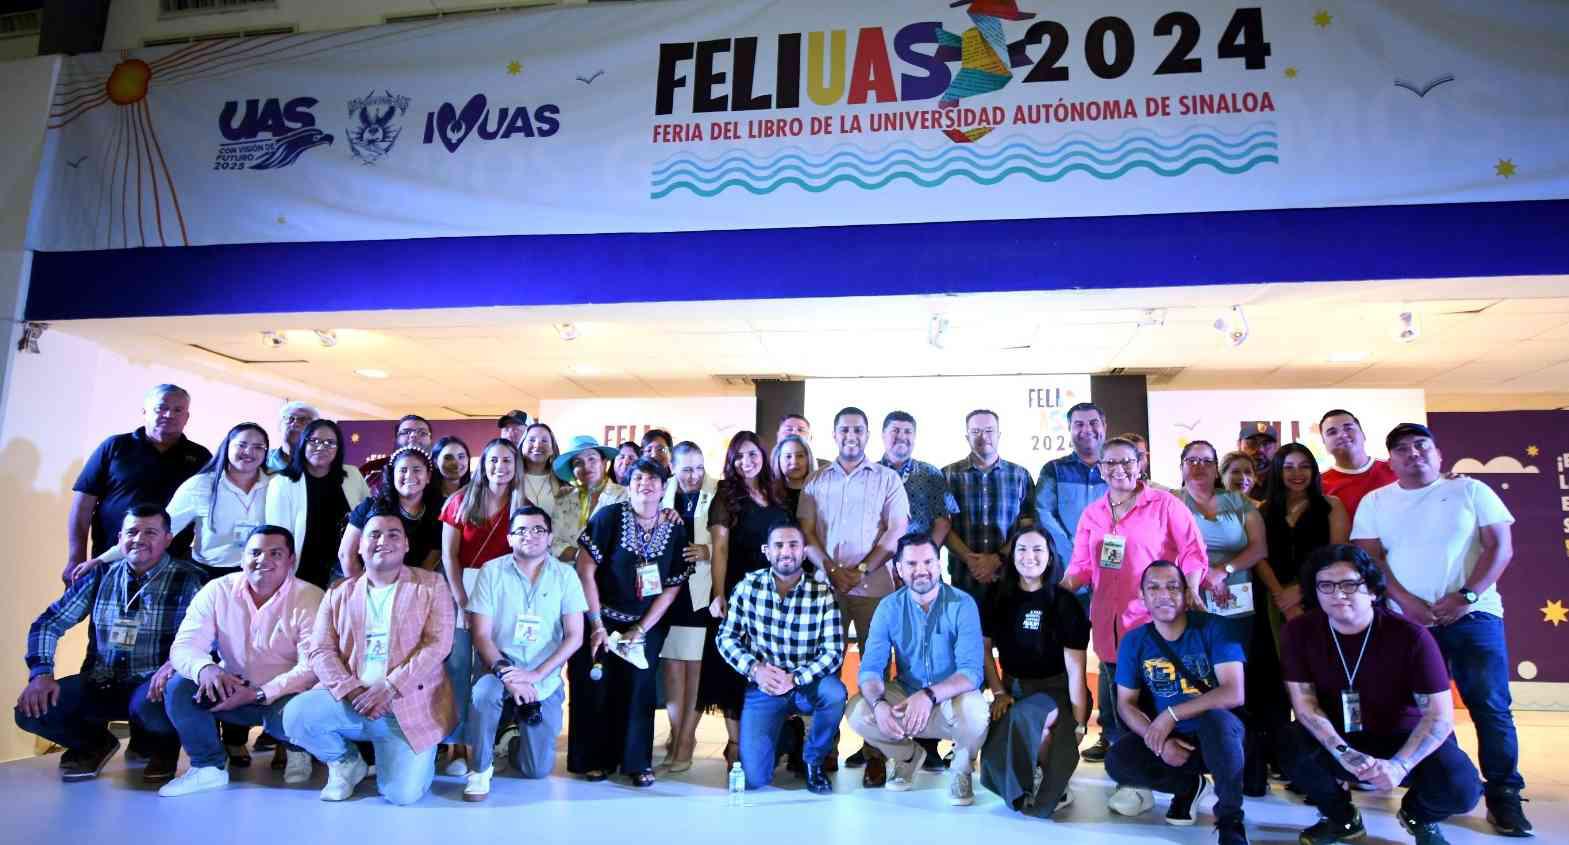 $!El equipo que trabajó en la organización y difusión de la FeliUAS 2024 se toma la fotografía del recuerdo.